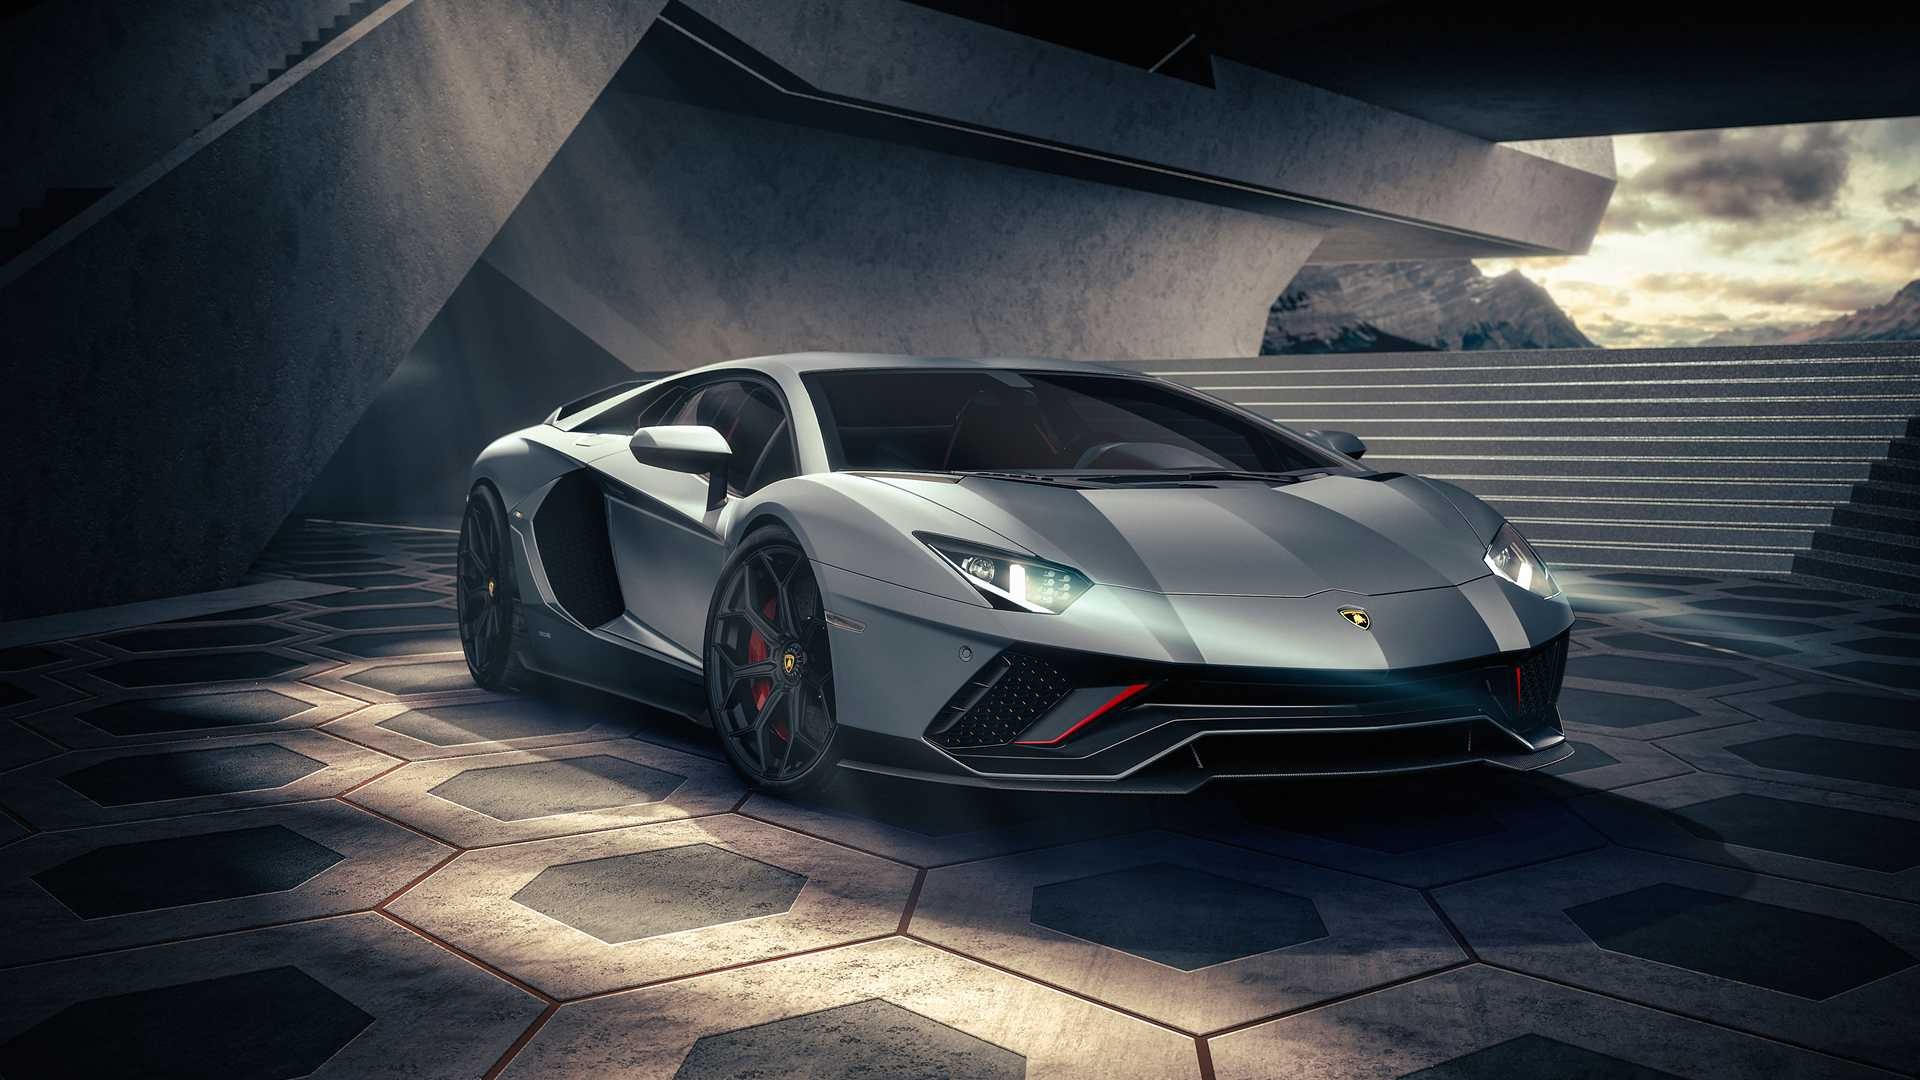 Lamborghini Aventador hoàn toàn đã hết hàng - điều đó cho thấy sức hút của dòng xe đến từ Lamborghini. Hãy xem hình ảnh của nó để hiểu tại sao mà nó lại được yêu thích đến vậy.